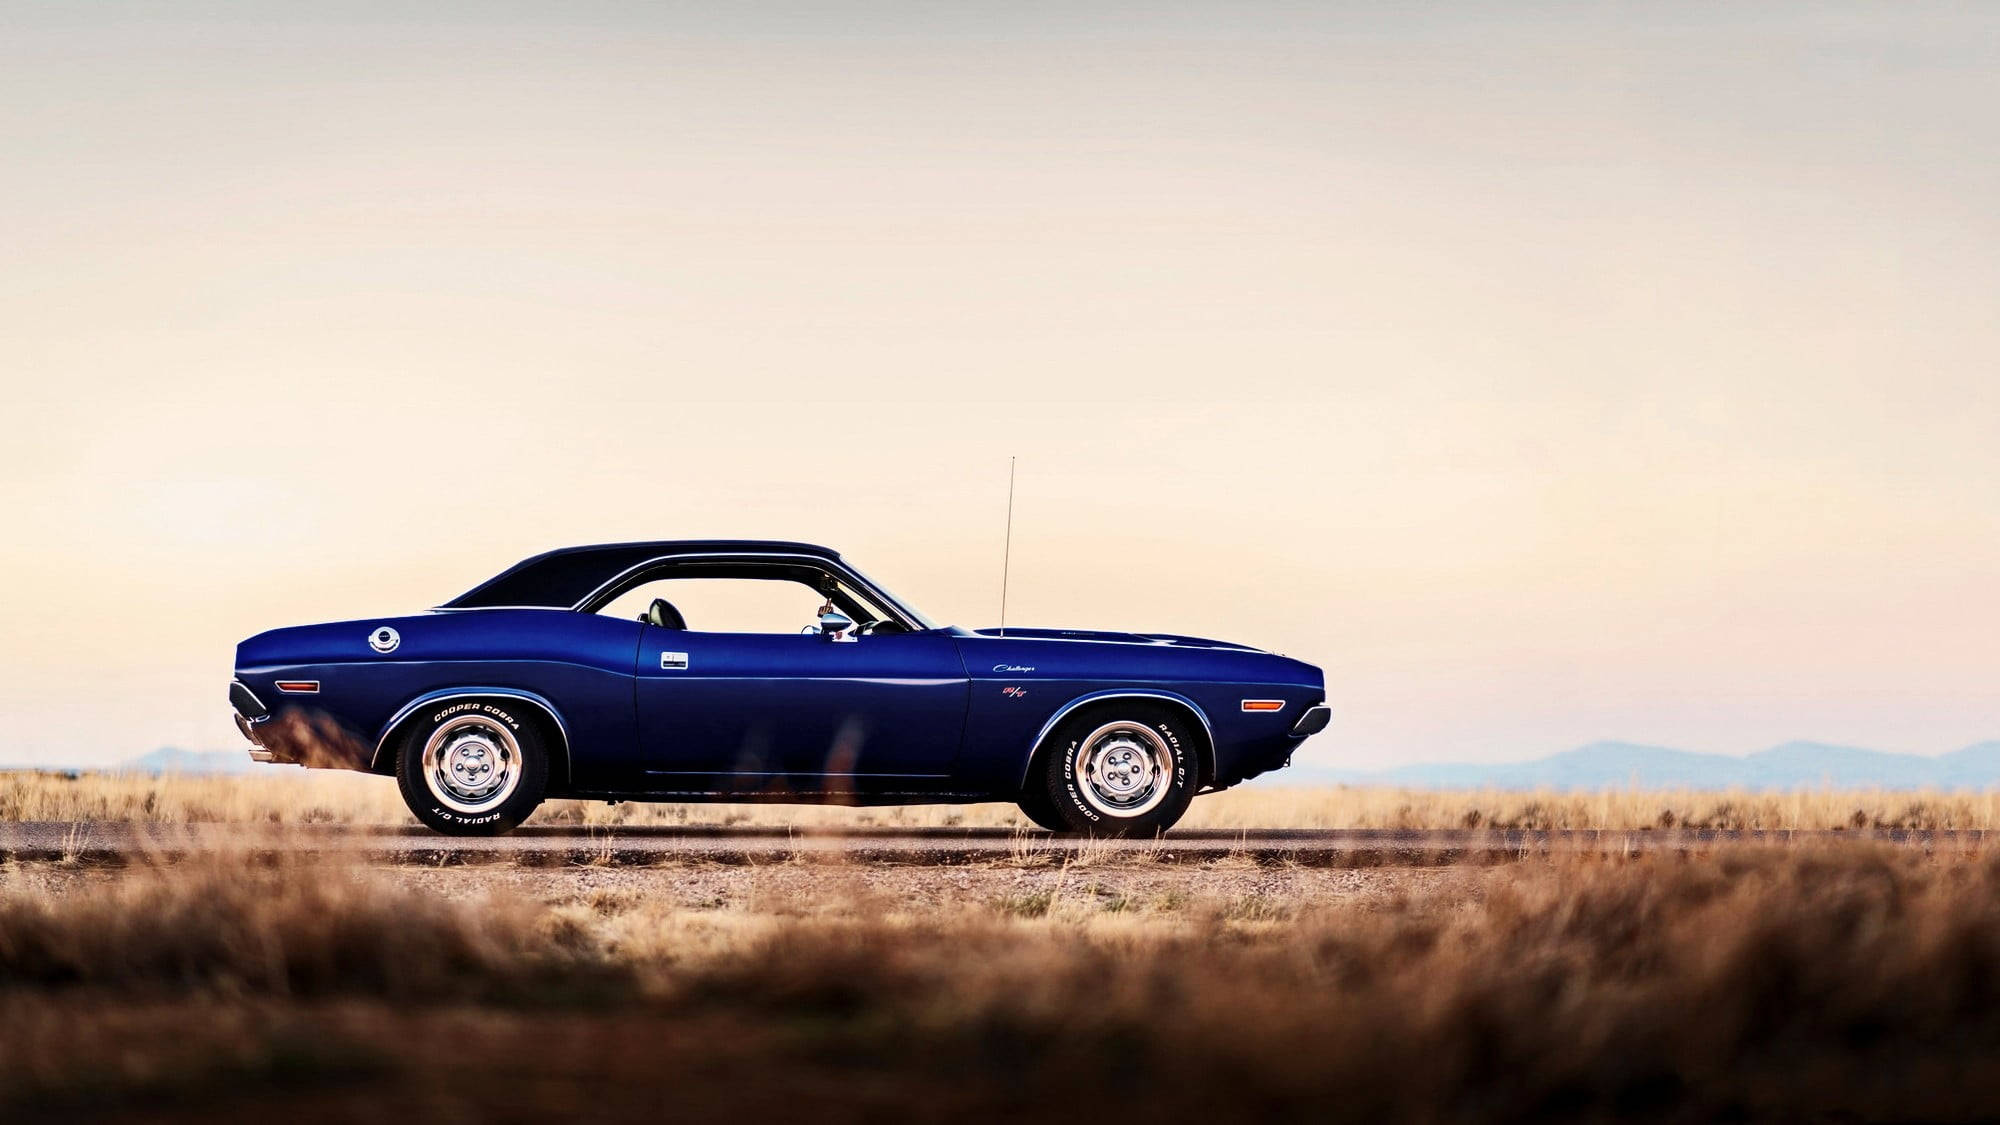 Deserted Navy Blue Dodge Challenger Background